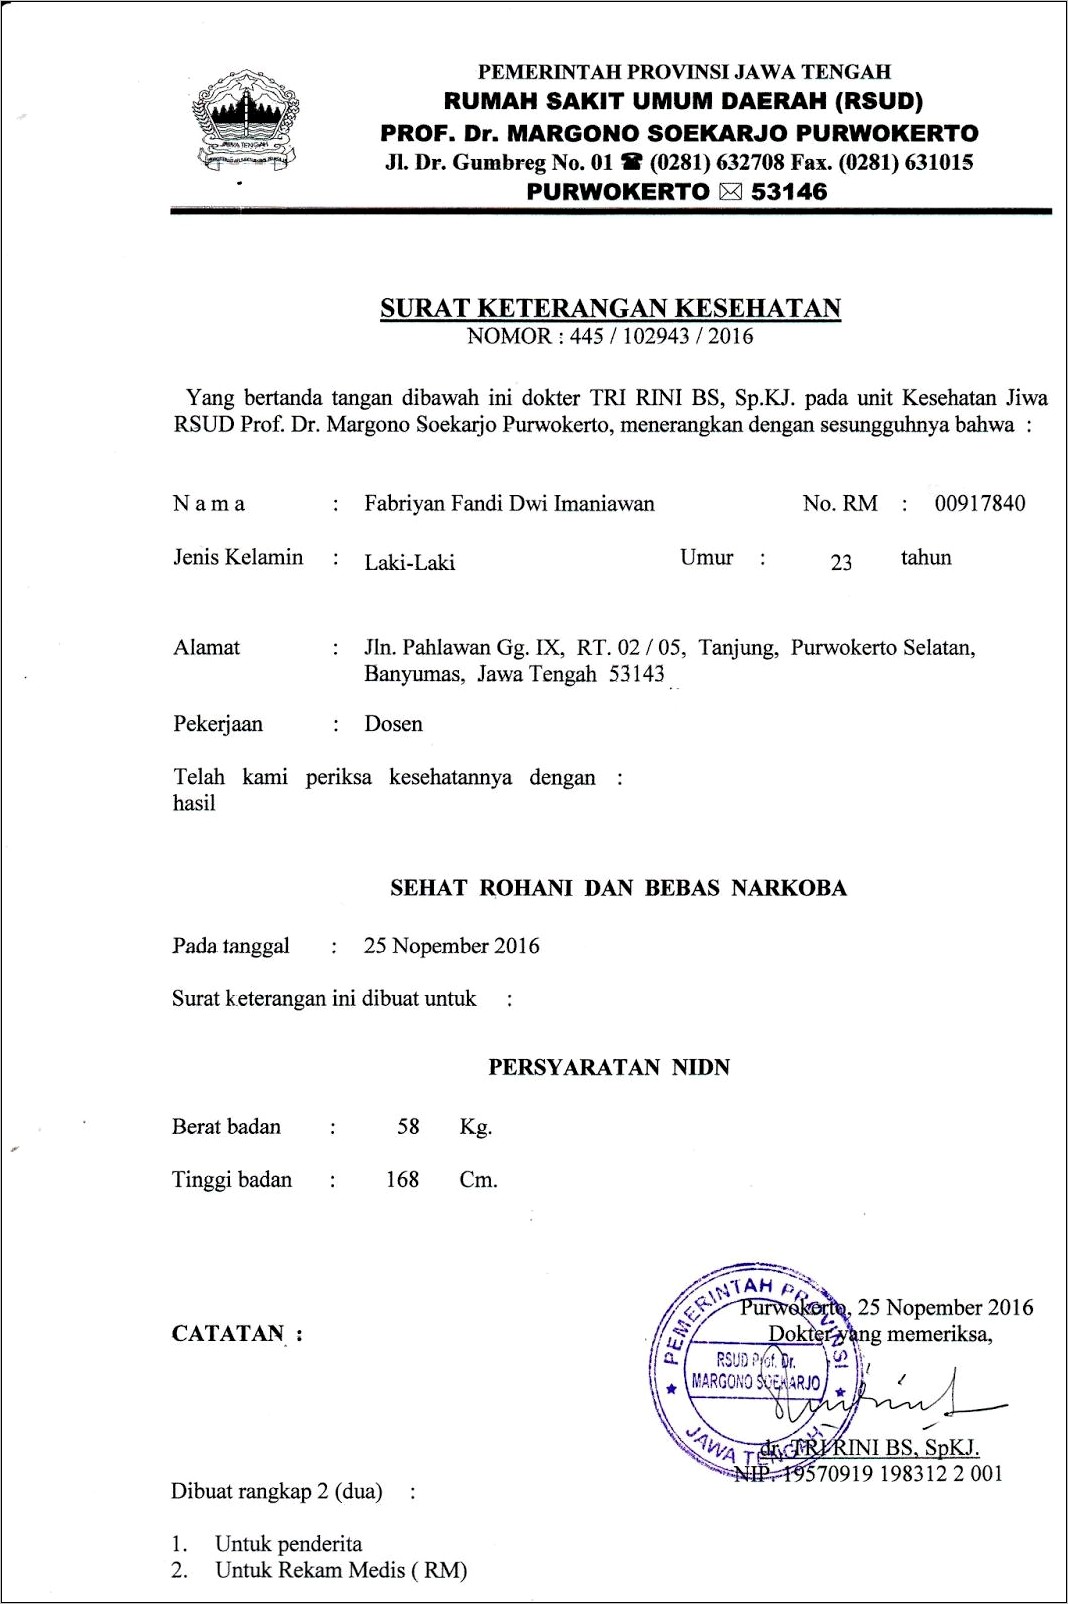 Contoh Format Surat Keterangan Sehat Dari Dokter Tangerang Surat